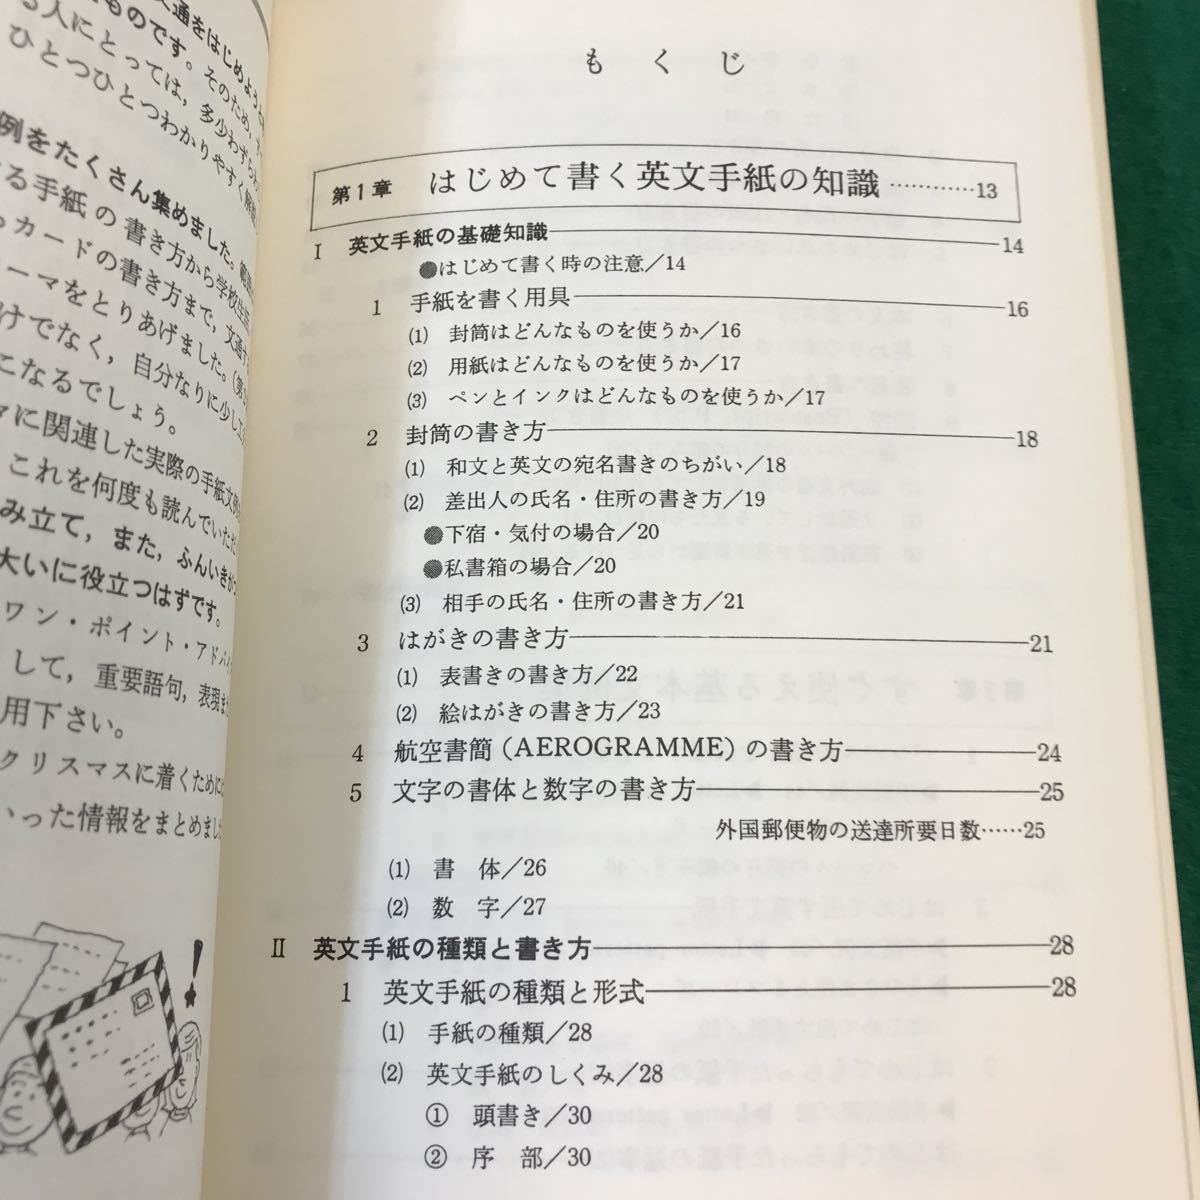 A02-098 はじめての英文手紙。書き方と模範文例。著者・松尾千恵子。新星出版社。1987年4月25日発行。発行人・富永弘一。_画像4